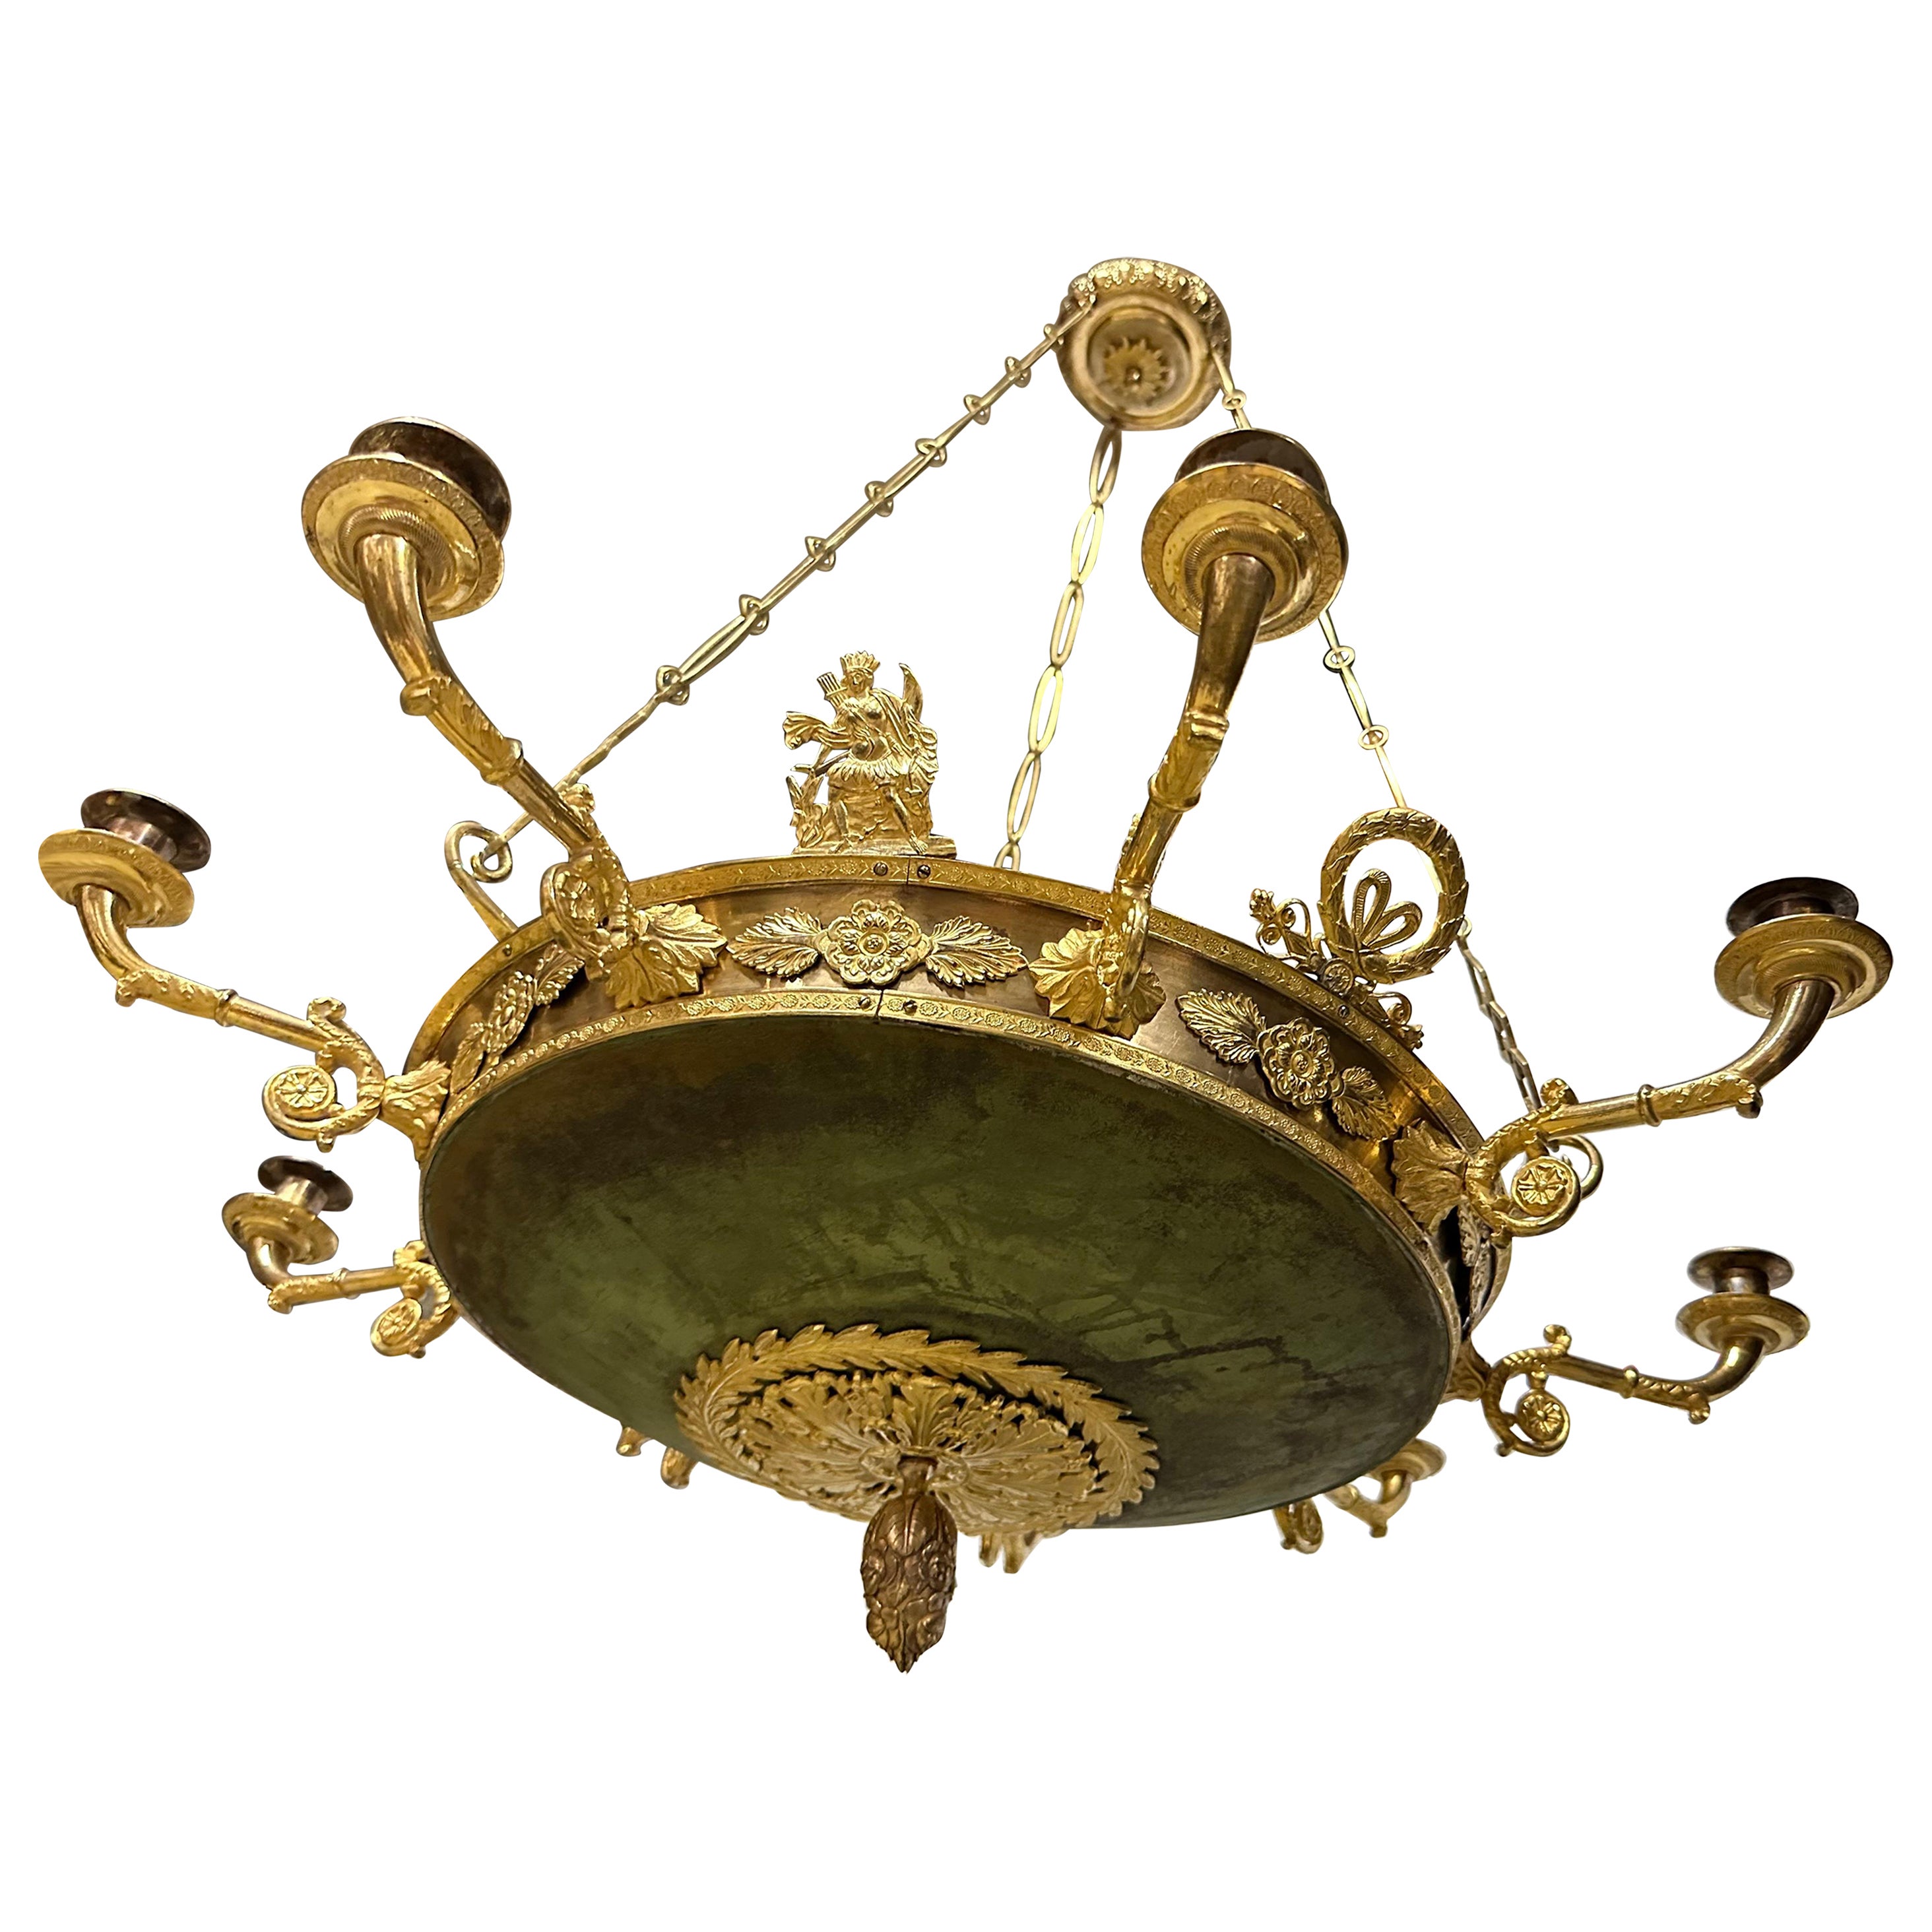 Eine charmante Empire-Lampe aus der Zeit um 1820. Die große Schale ist grünpatiniert, die Patina ist unberührt und hat mit ihren Unregelmäßigkeiten in der Farbe ein sehr charmantes Aussehen. Die Arme und andere dekorative Elemente sind aus Bronze